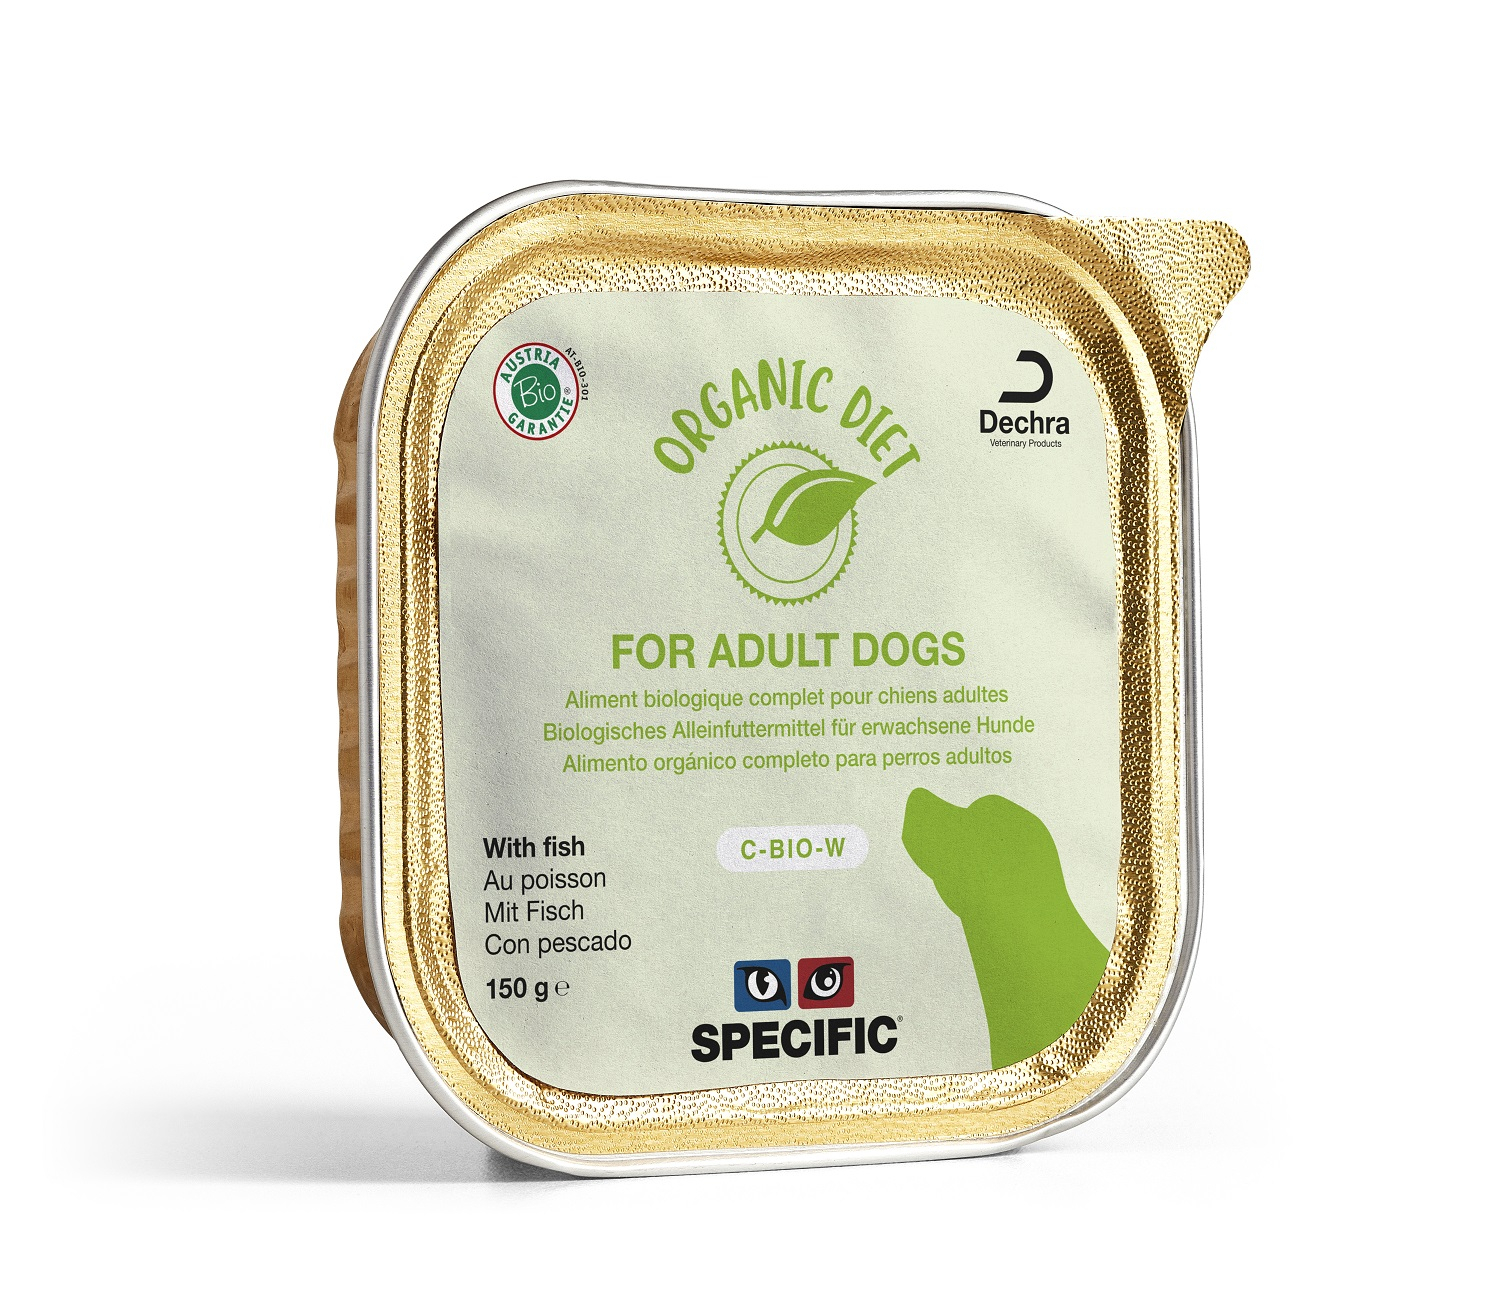 SPECIFIC Pack da 5 patè C-BIO-W Organic per cani adulti - diversi sapori disponibili